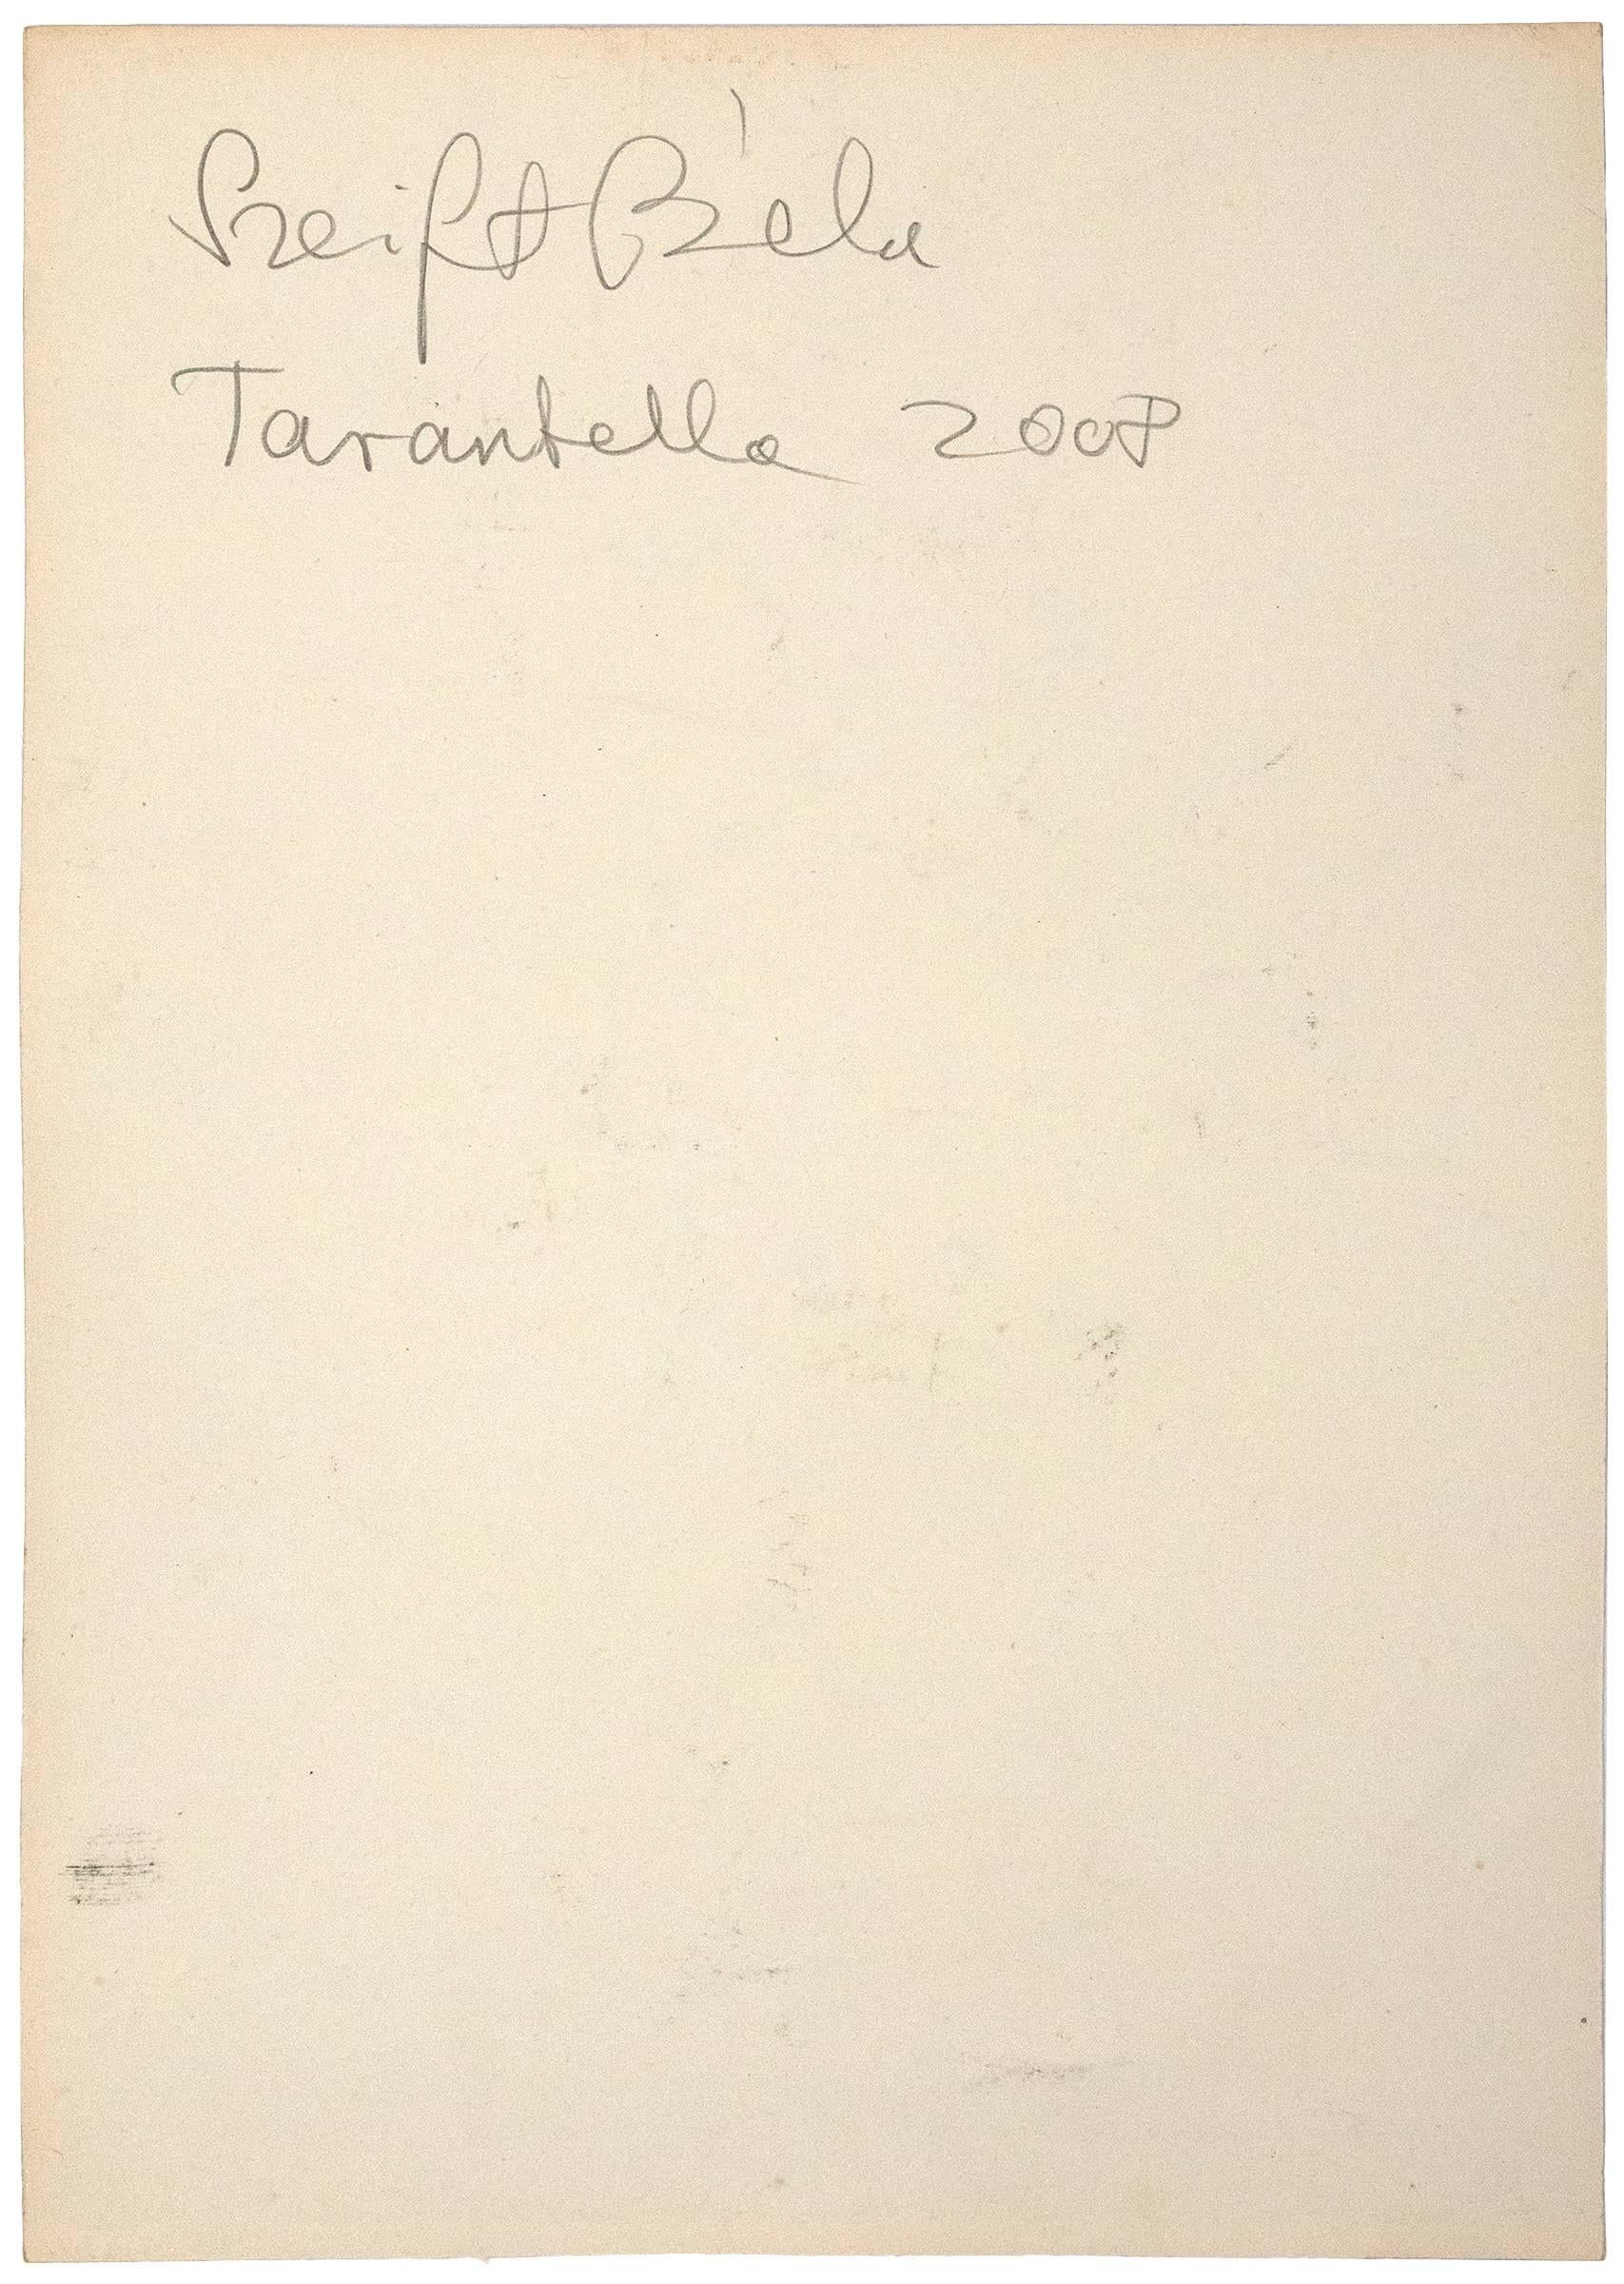 Tarantella - Art by Bela Szeift